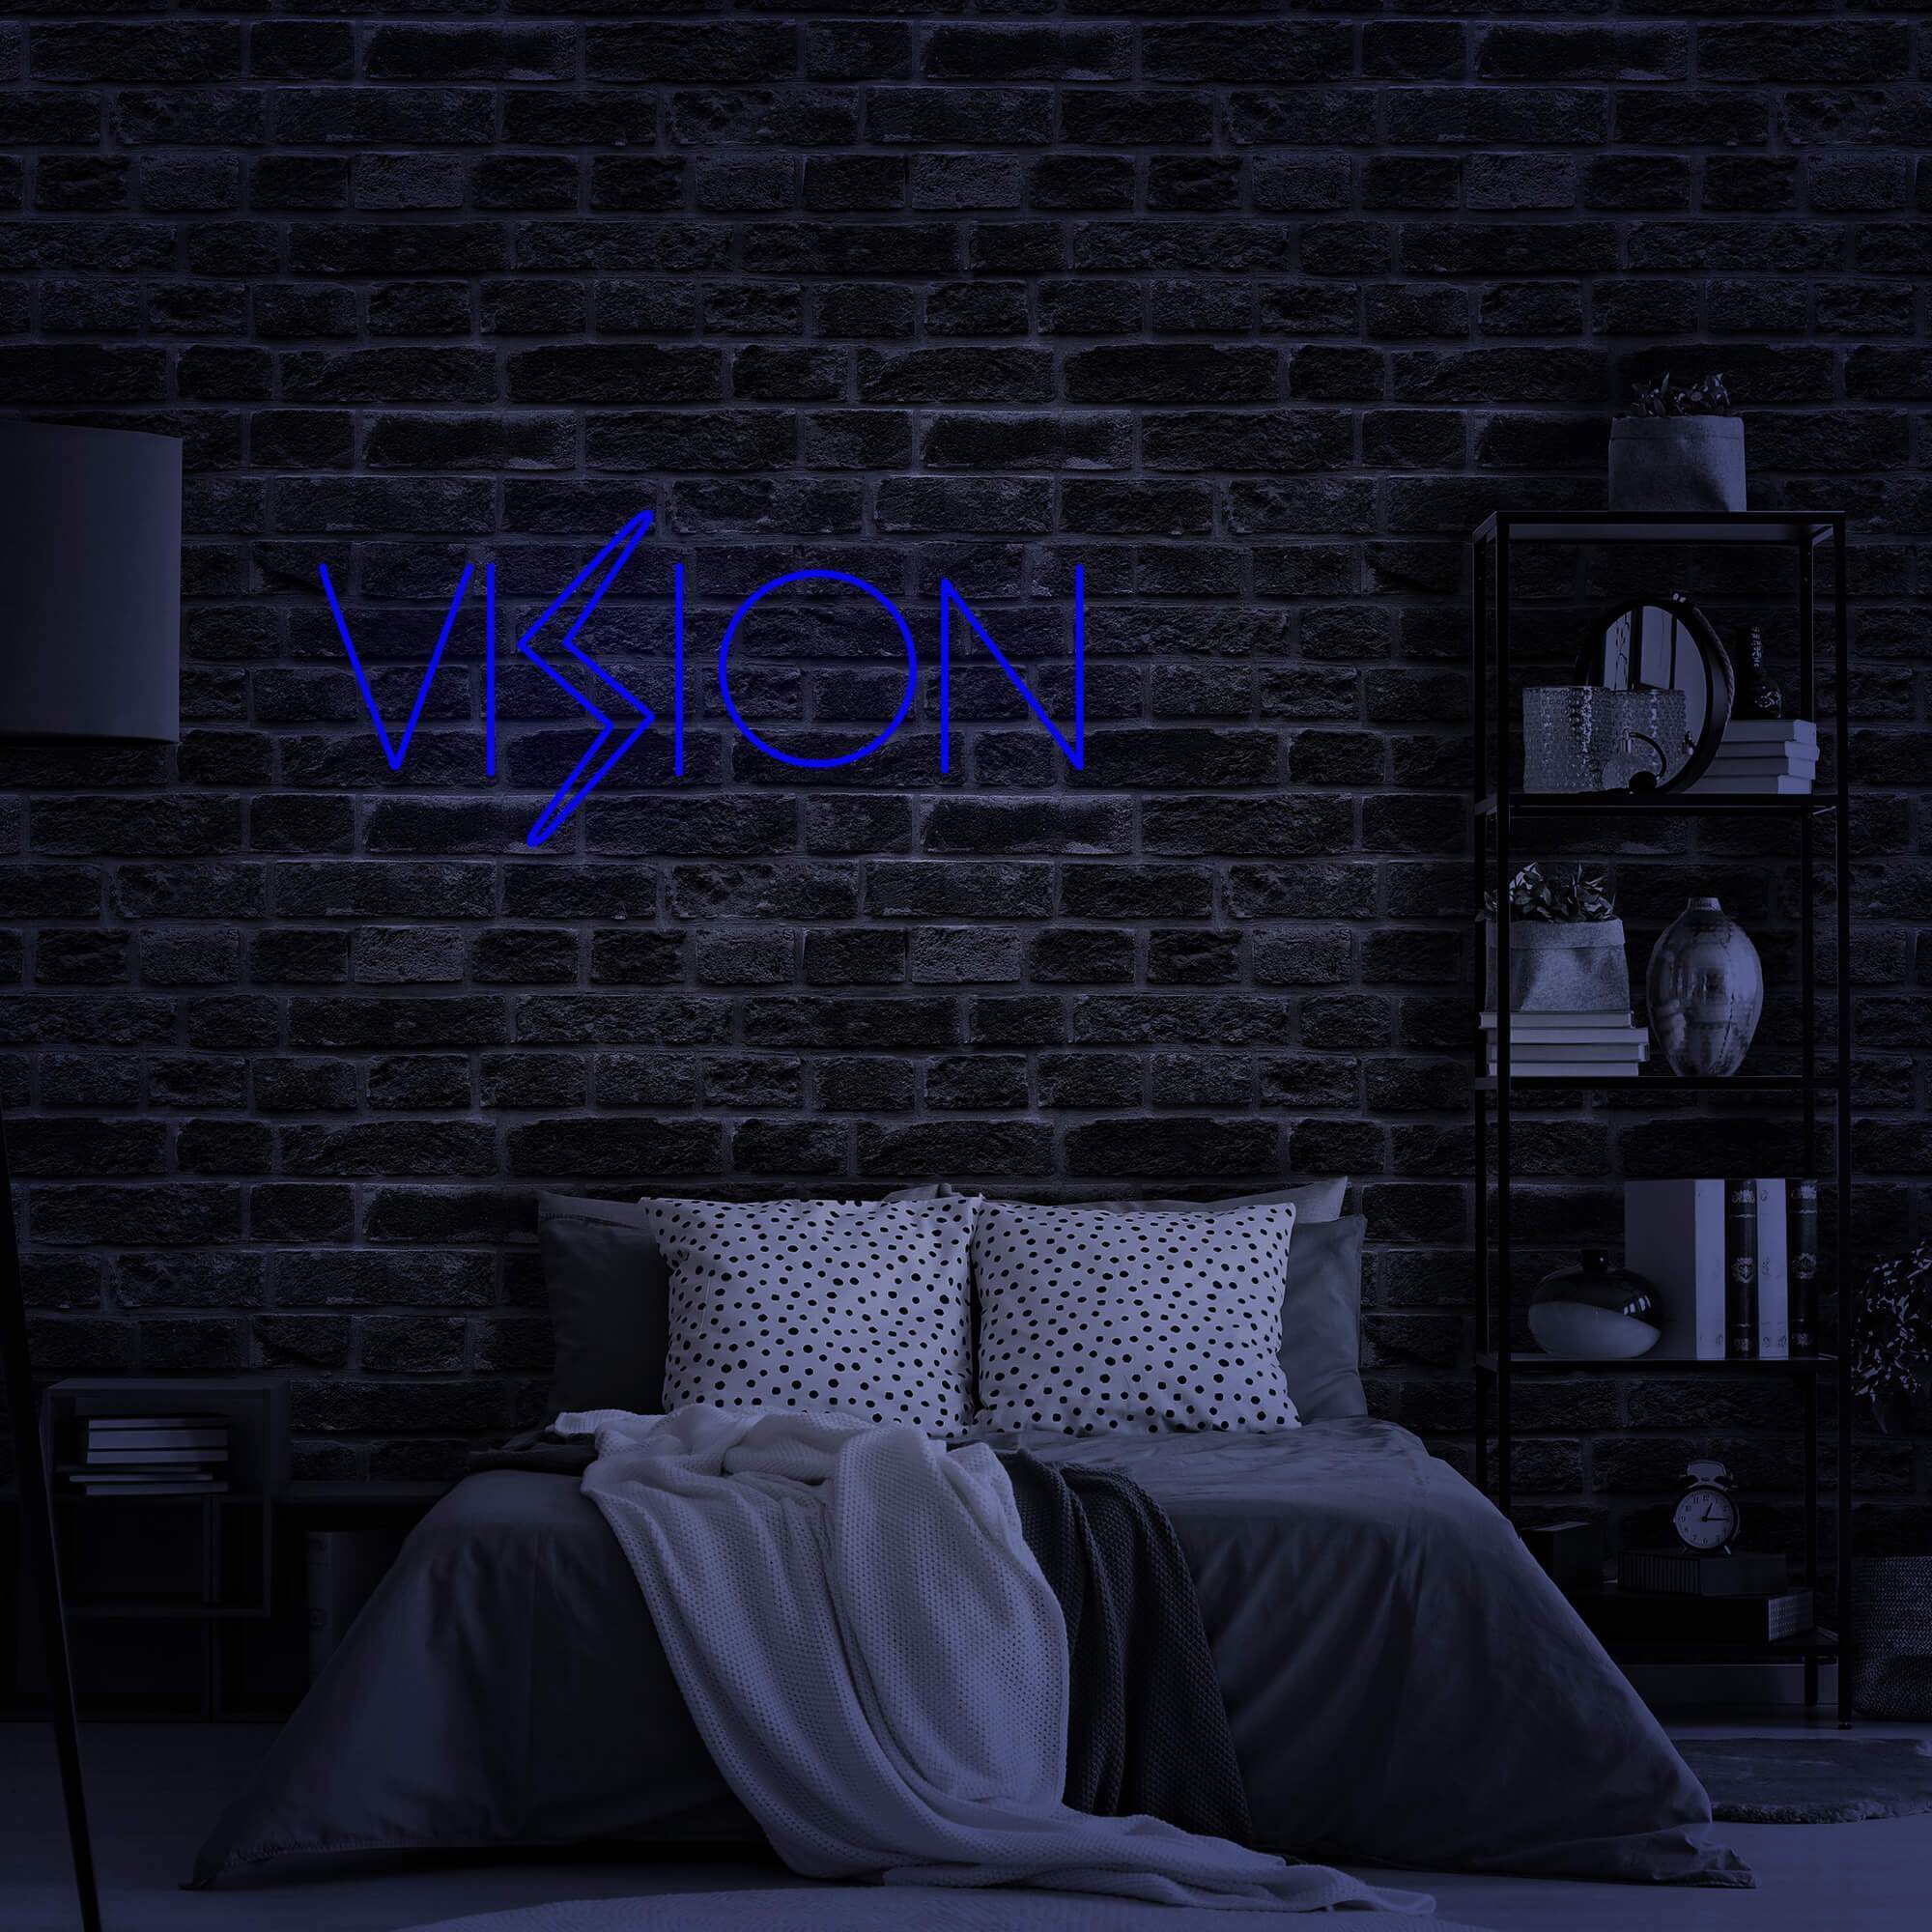 Vison Neon Sign Lights For Hair Salon